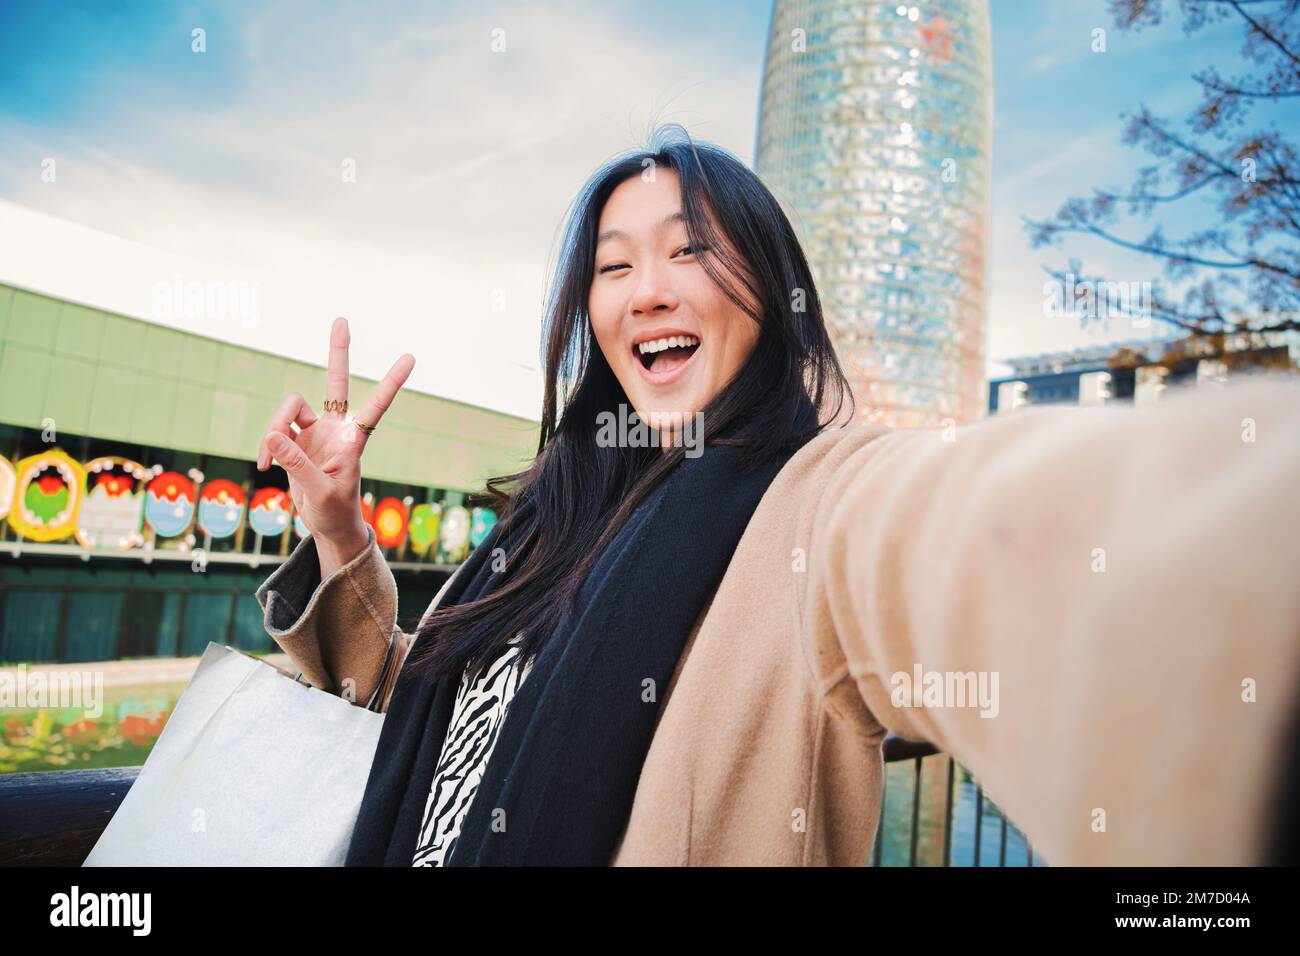 Glückliche junge asiatische Frau, die ein Selfie-Foto mit einem Smartphone macht. Selbstporträt einer lächelnden chinesin, die nach dem Einkaufen im Freien das Friedenszeichen trägt. Hochwertiges Foto Stockfoto